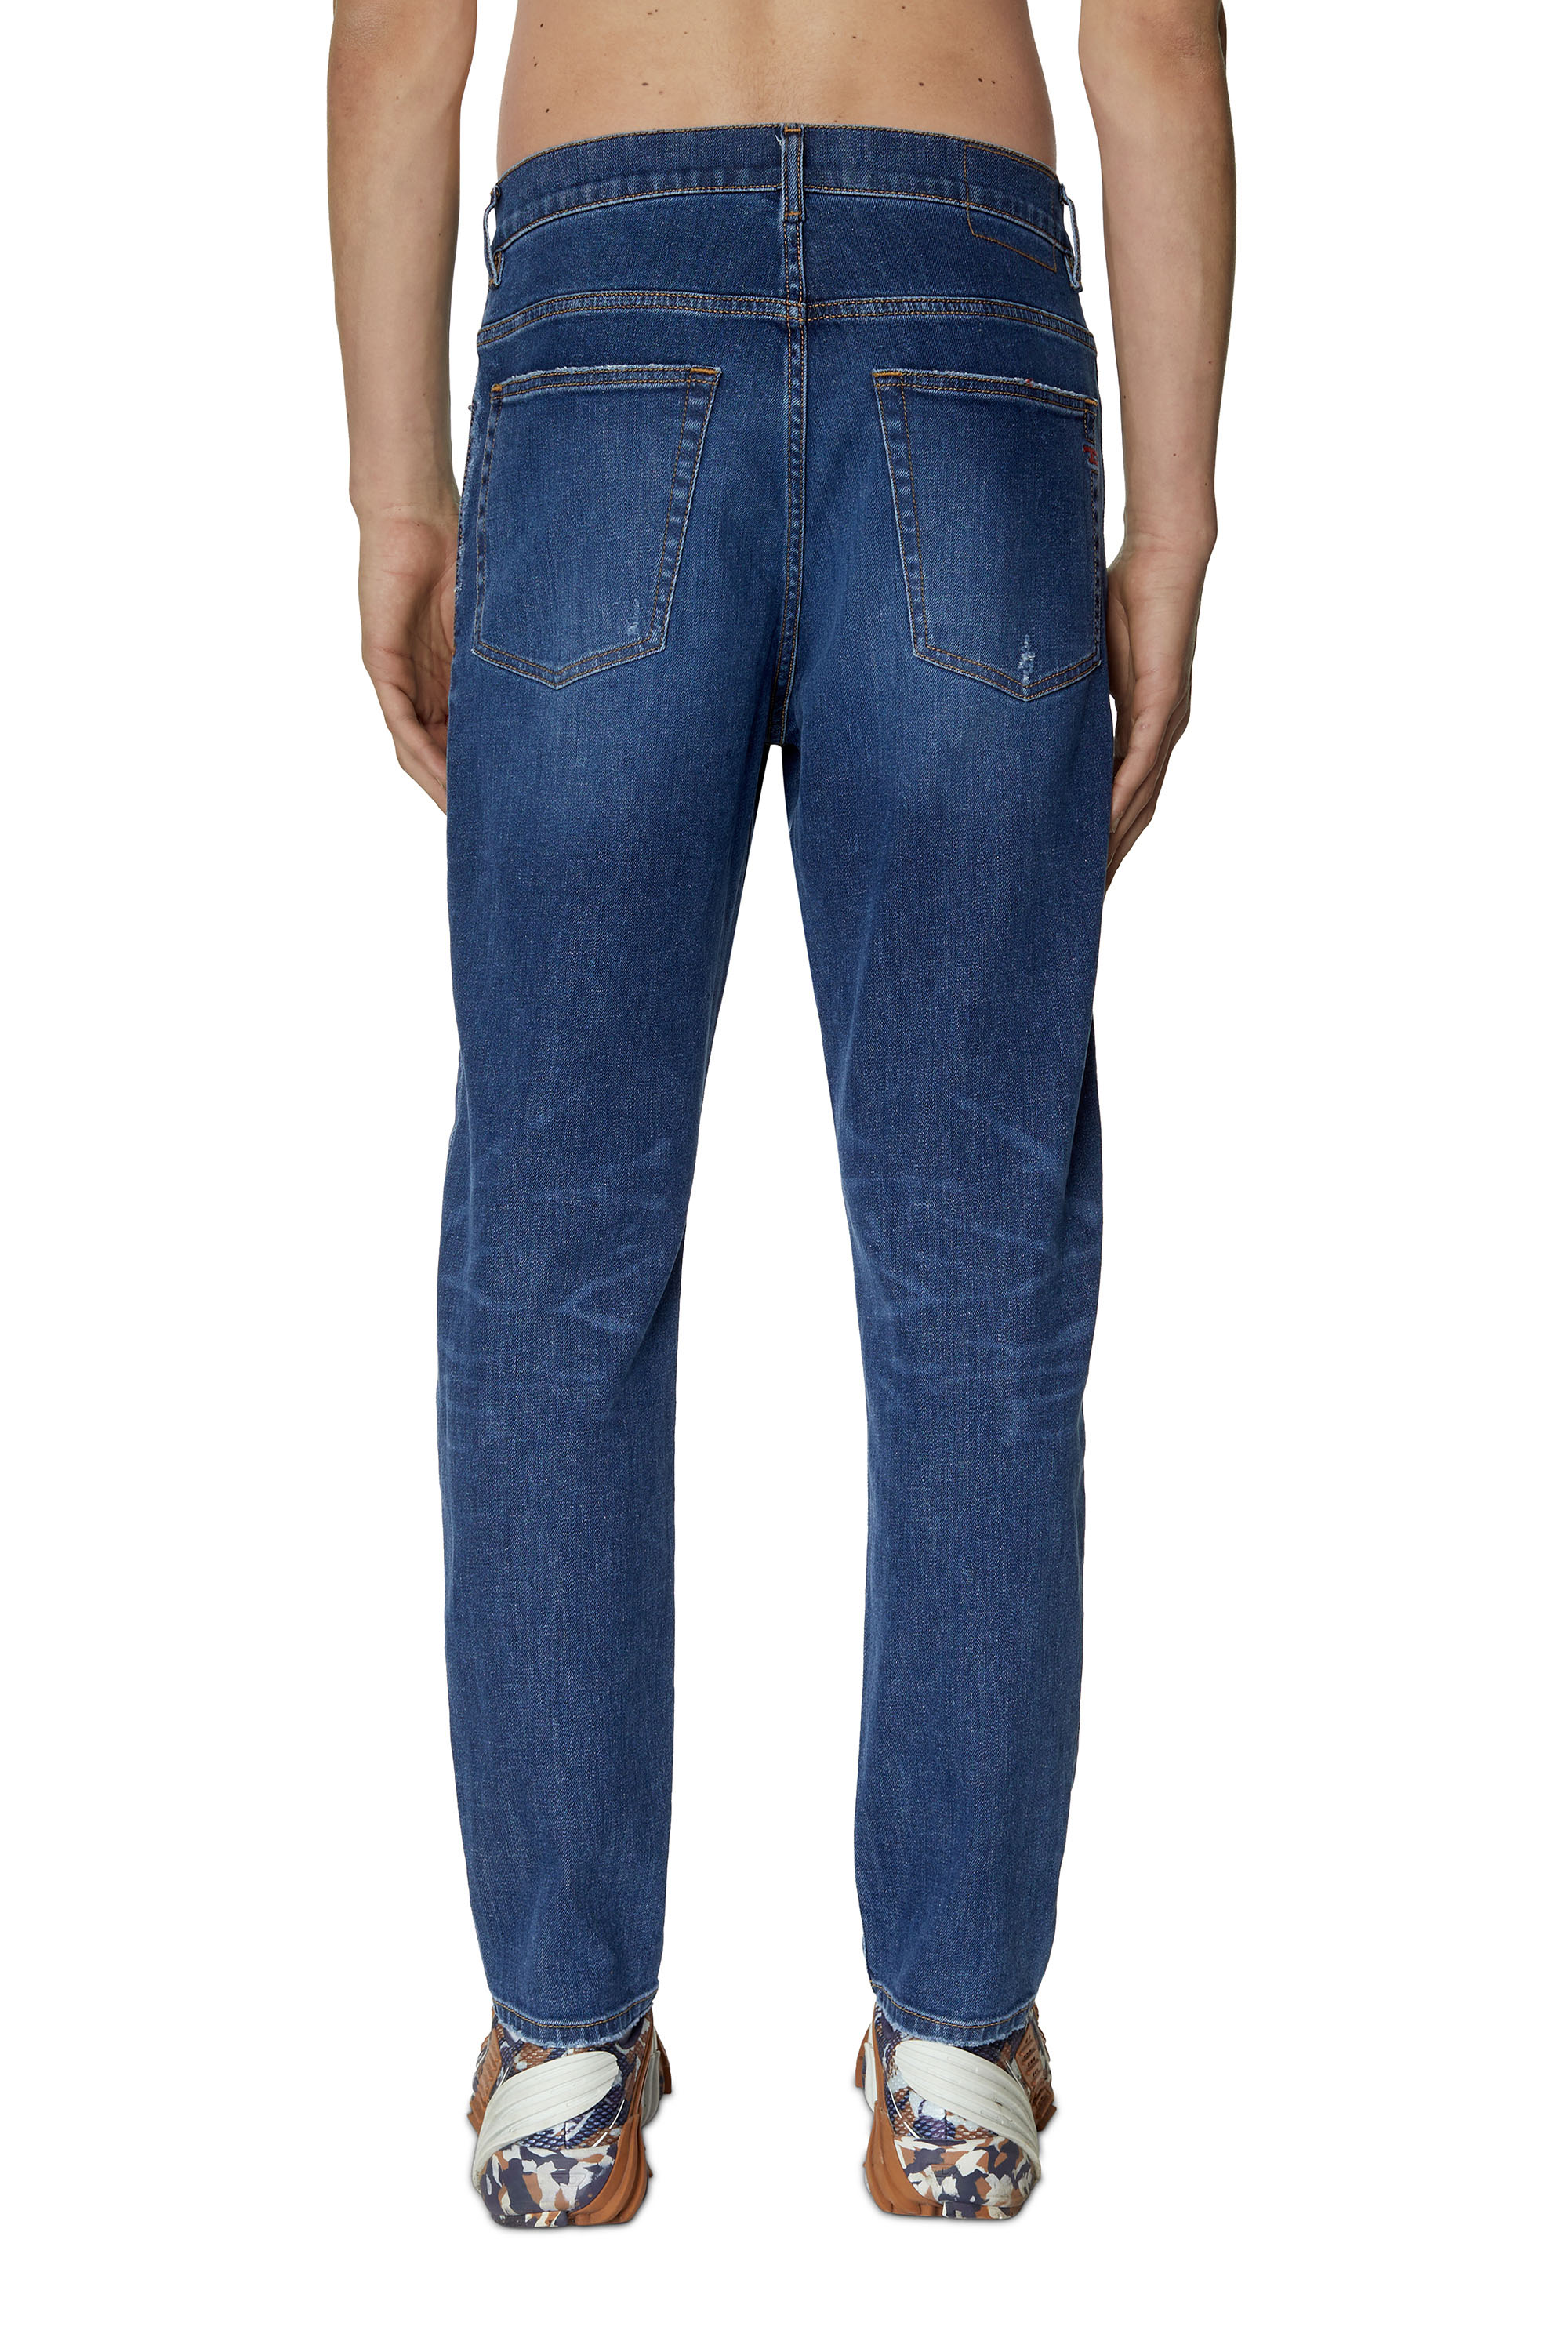 Men's Jeans: Skinny, Slim, Bootcut | Diesel ®